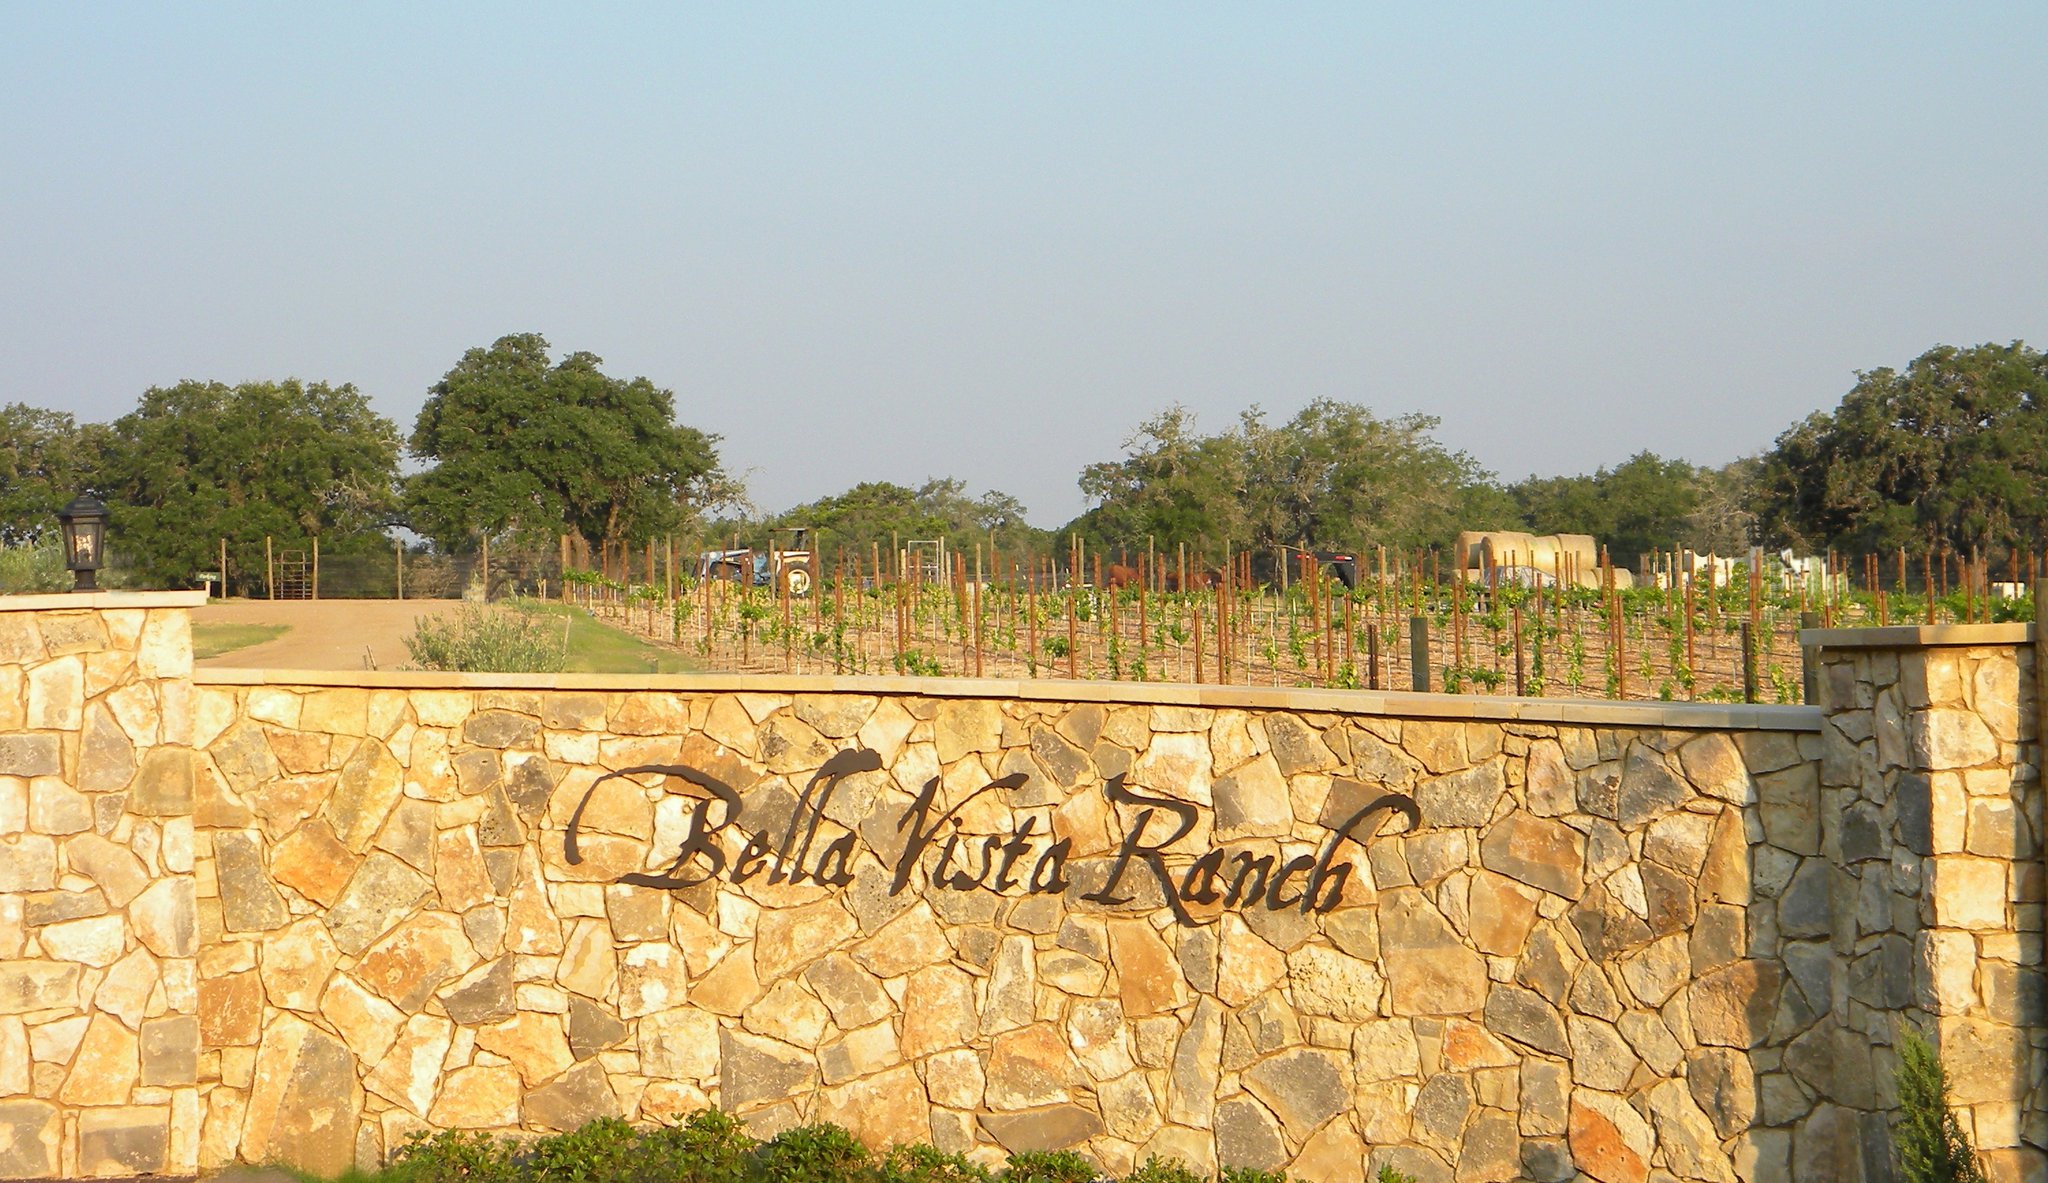 Bella Vista Ranch